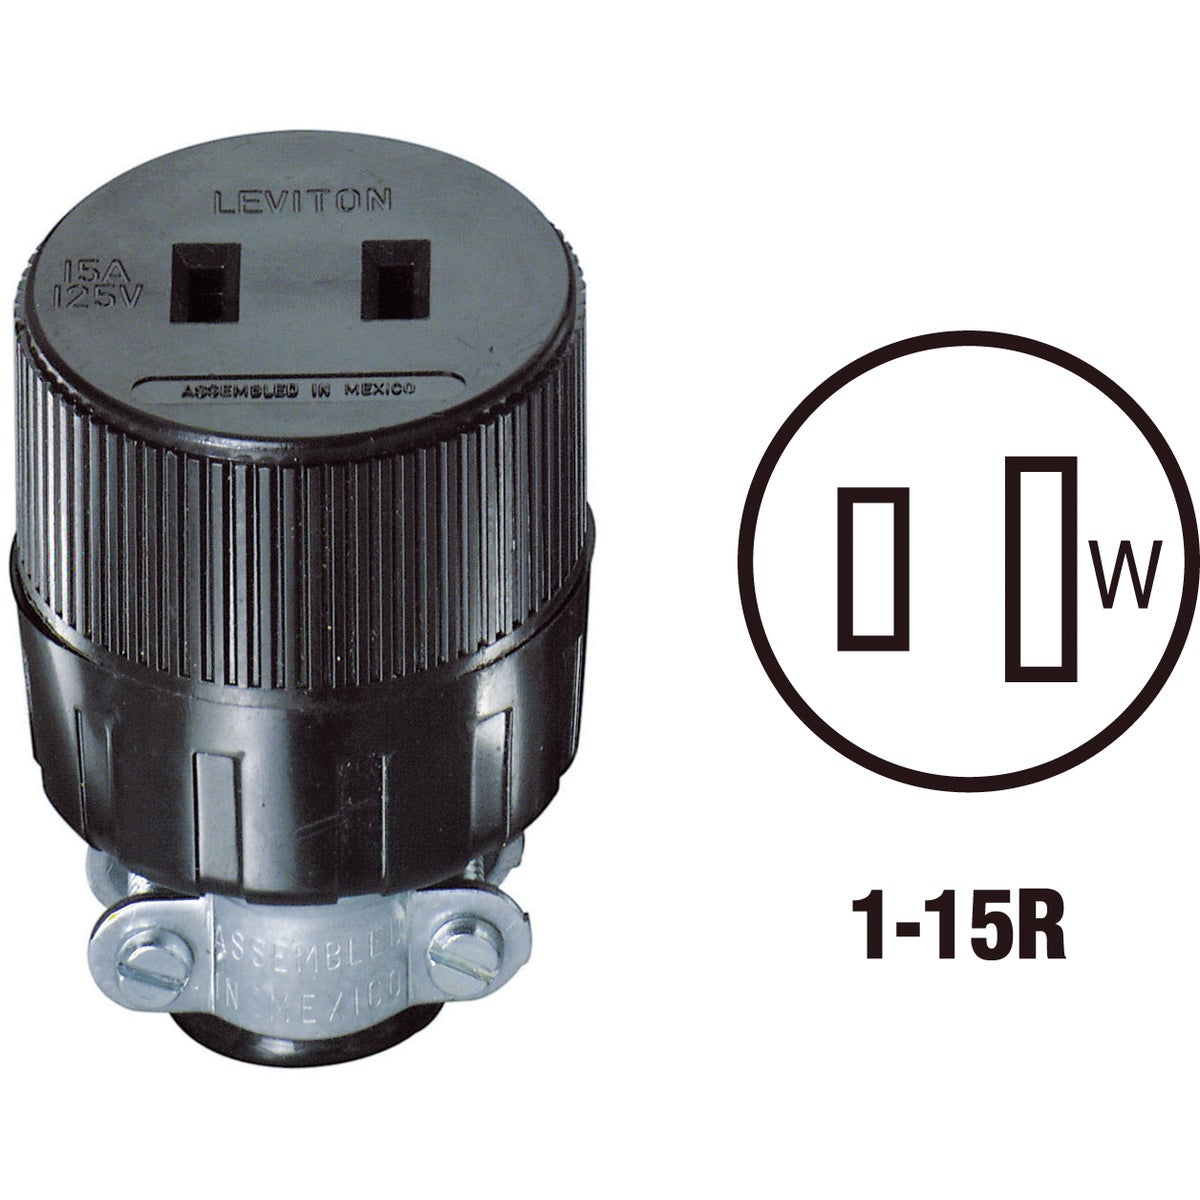 Item 521288, Vinyl round connector. Maximum cord diameter 0.437 In. 15A/125V. Black.